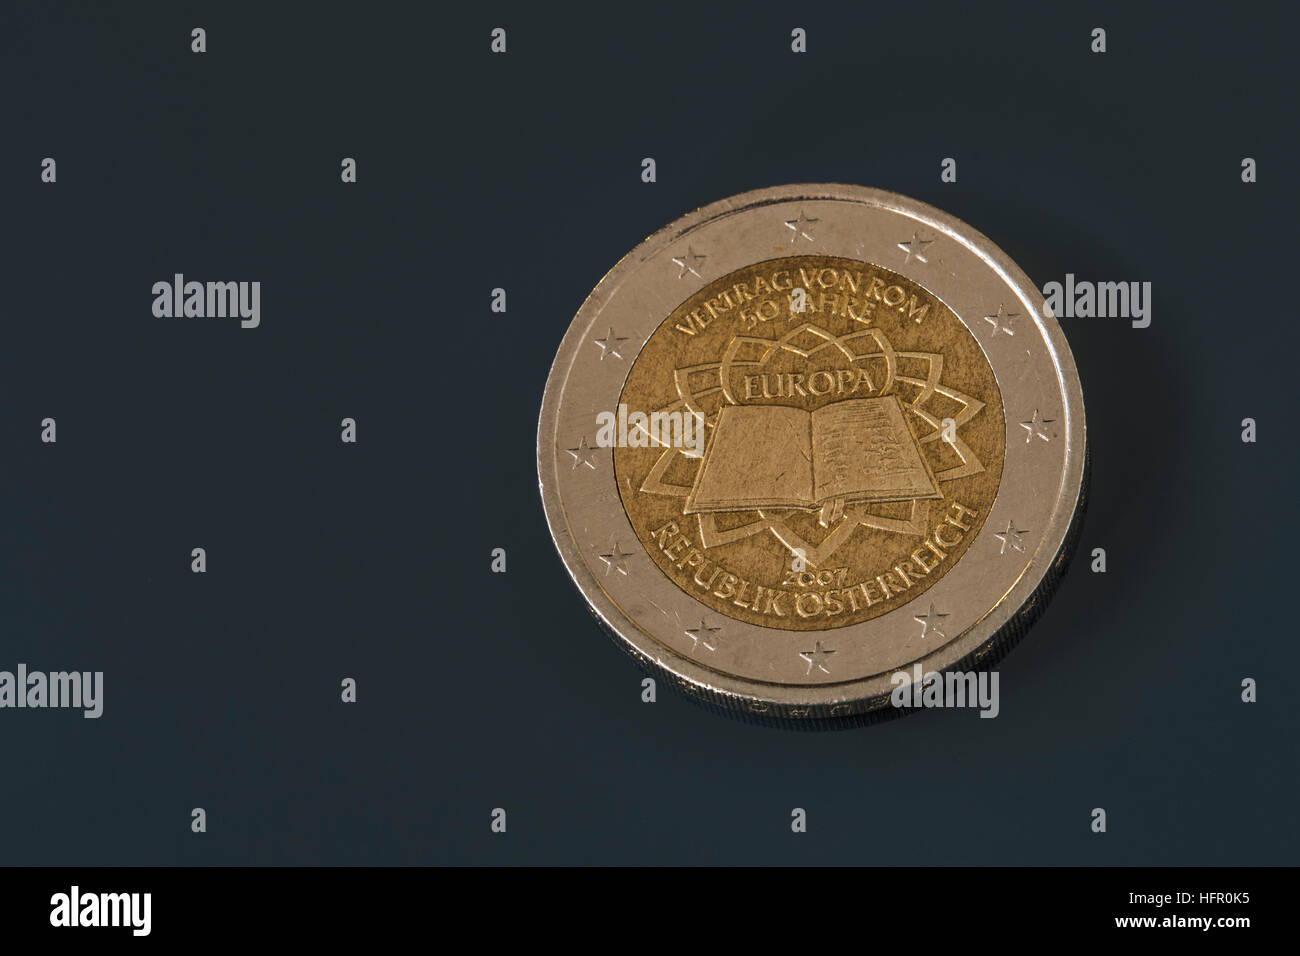 2 EUR commémorative pièces émises pour célébrer le 50e anniversaire du Traité de Rome, émis par l'Autriche en 2007 Banque D'Images